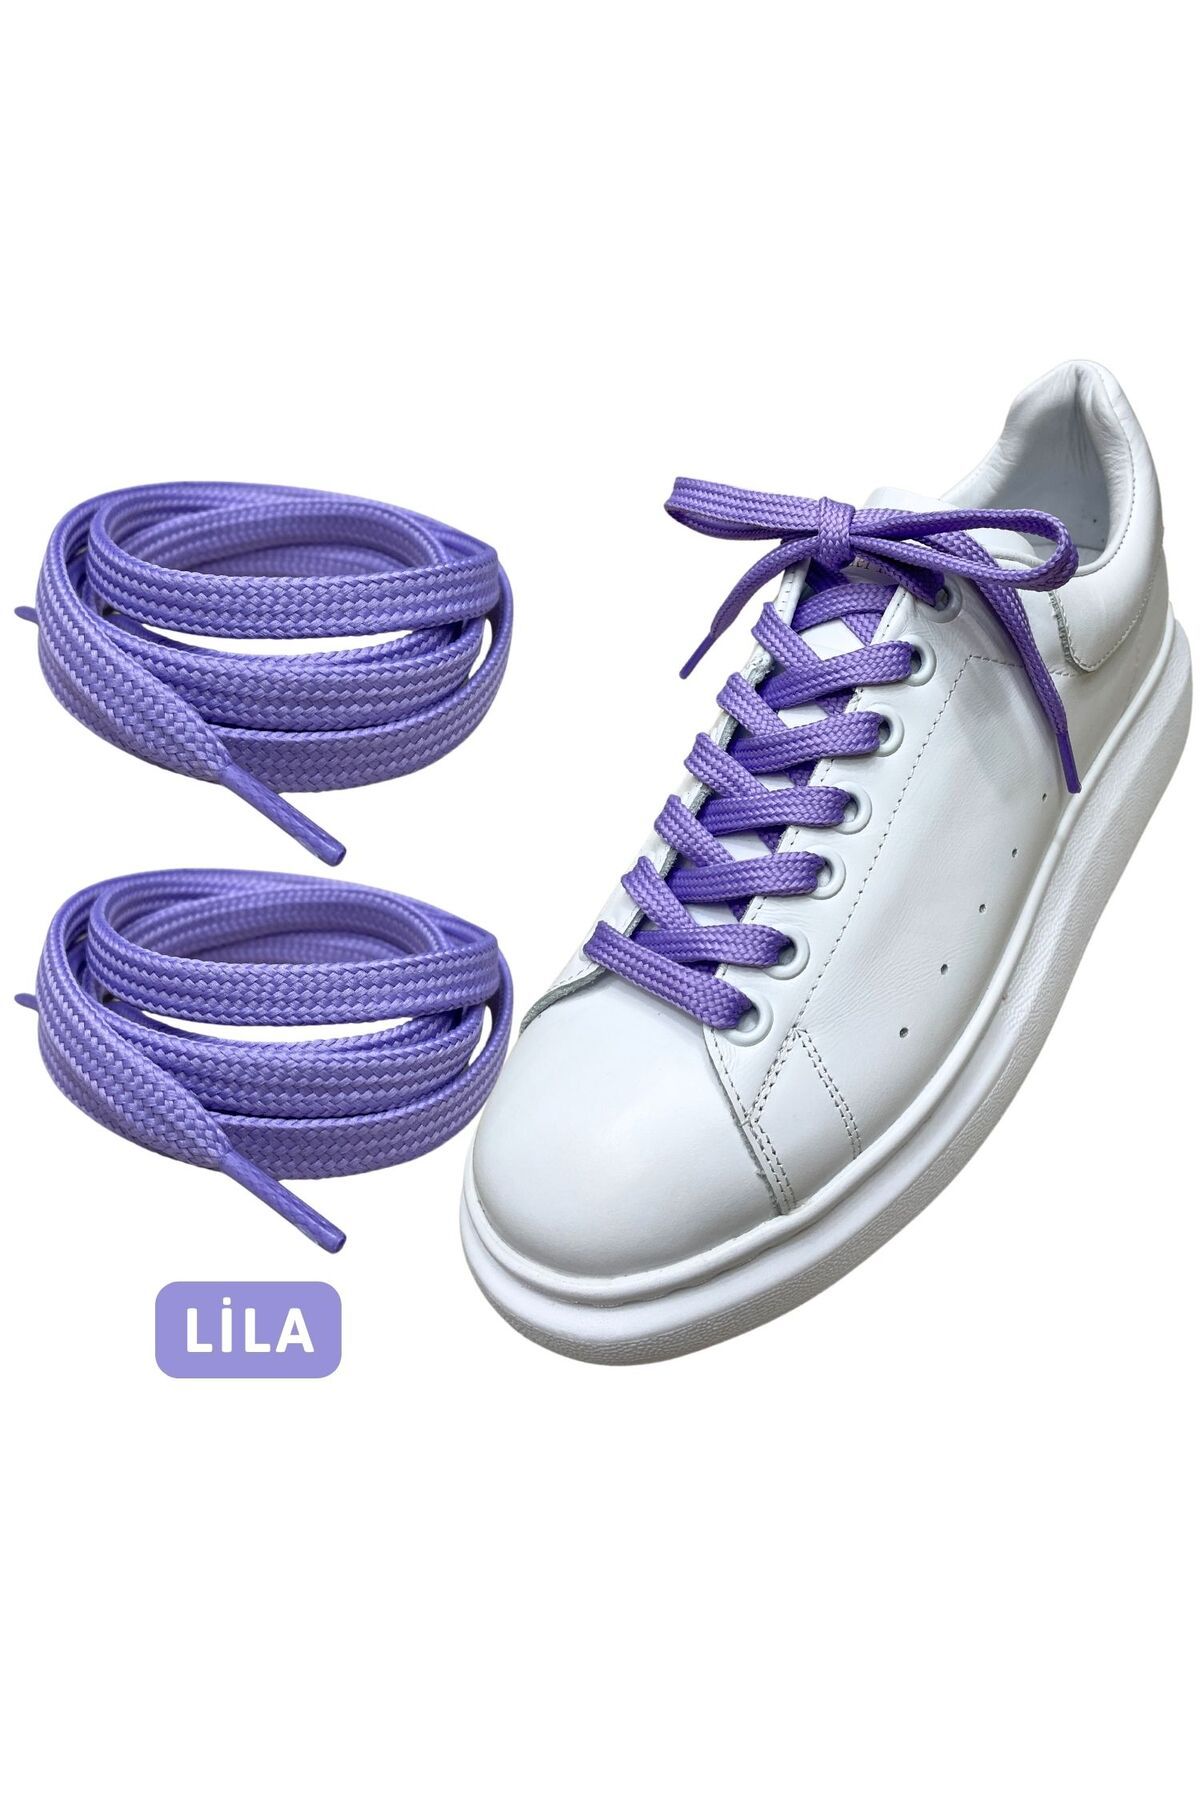 ipekbazaar Exclusice 120 Cm Lila Yassı Spor Ayakkabı Bağcığı, Çift Katmanlı Örgülü Sneakers Bağcık, 1 Çift